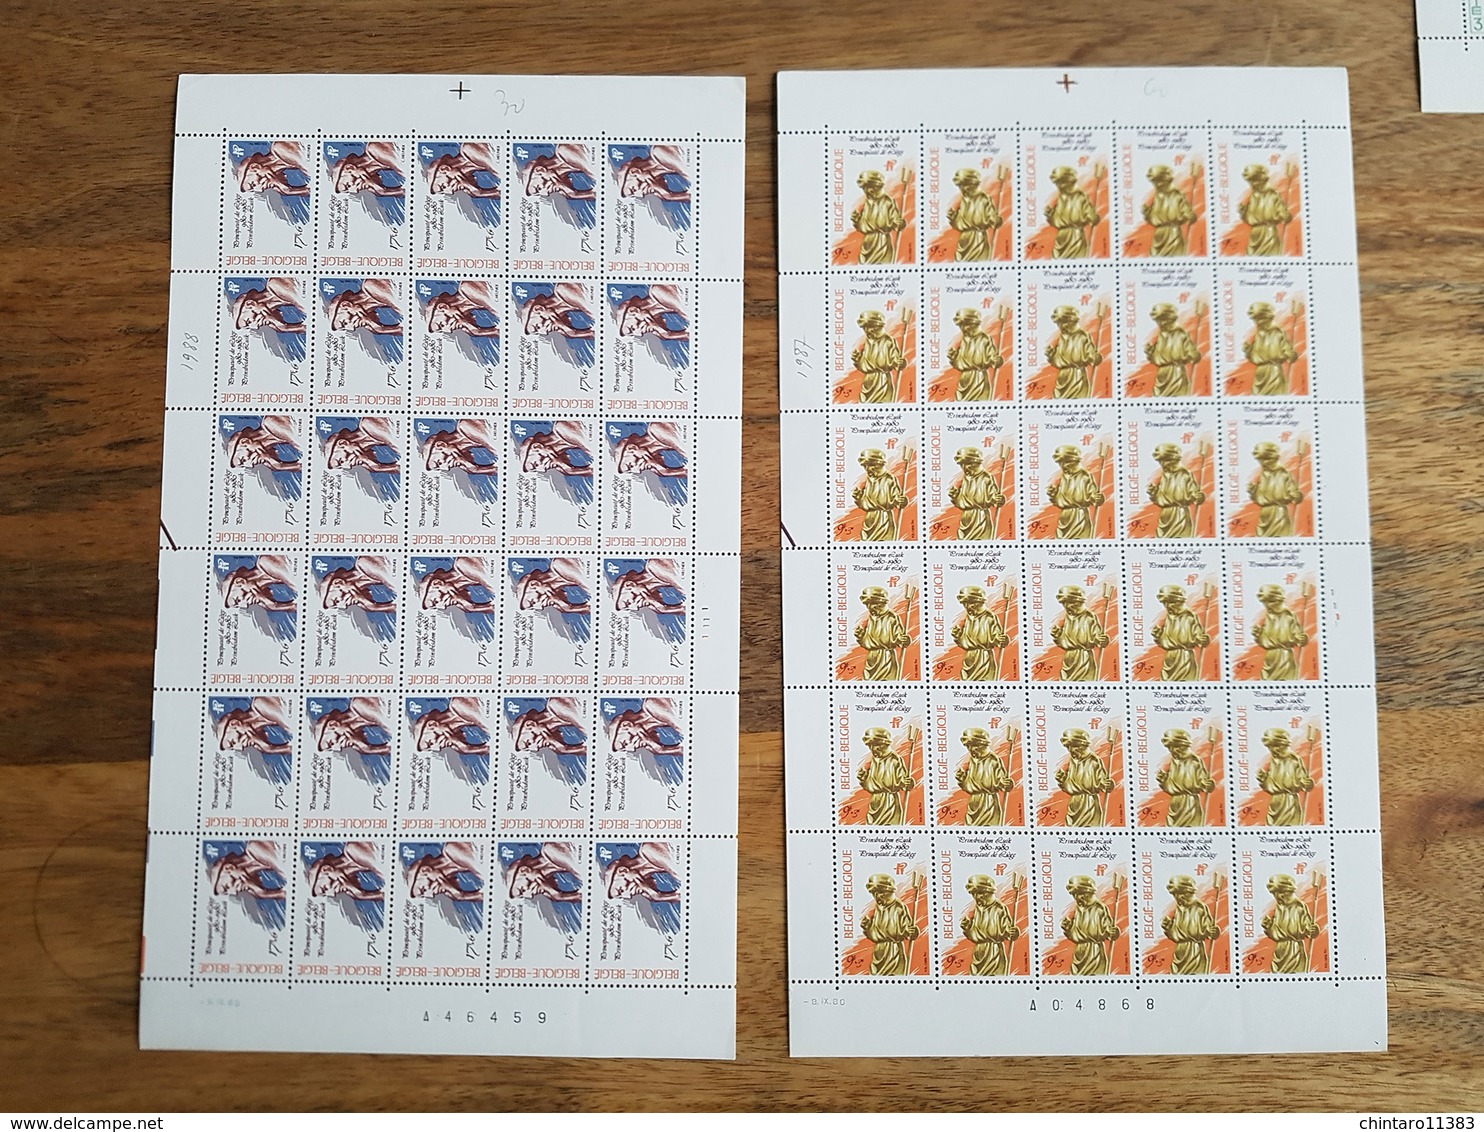 Lot feuilles complètes/incomplètes de timbres Belgique - Année 1980